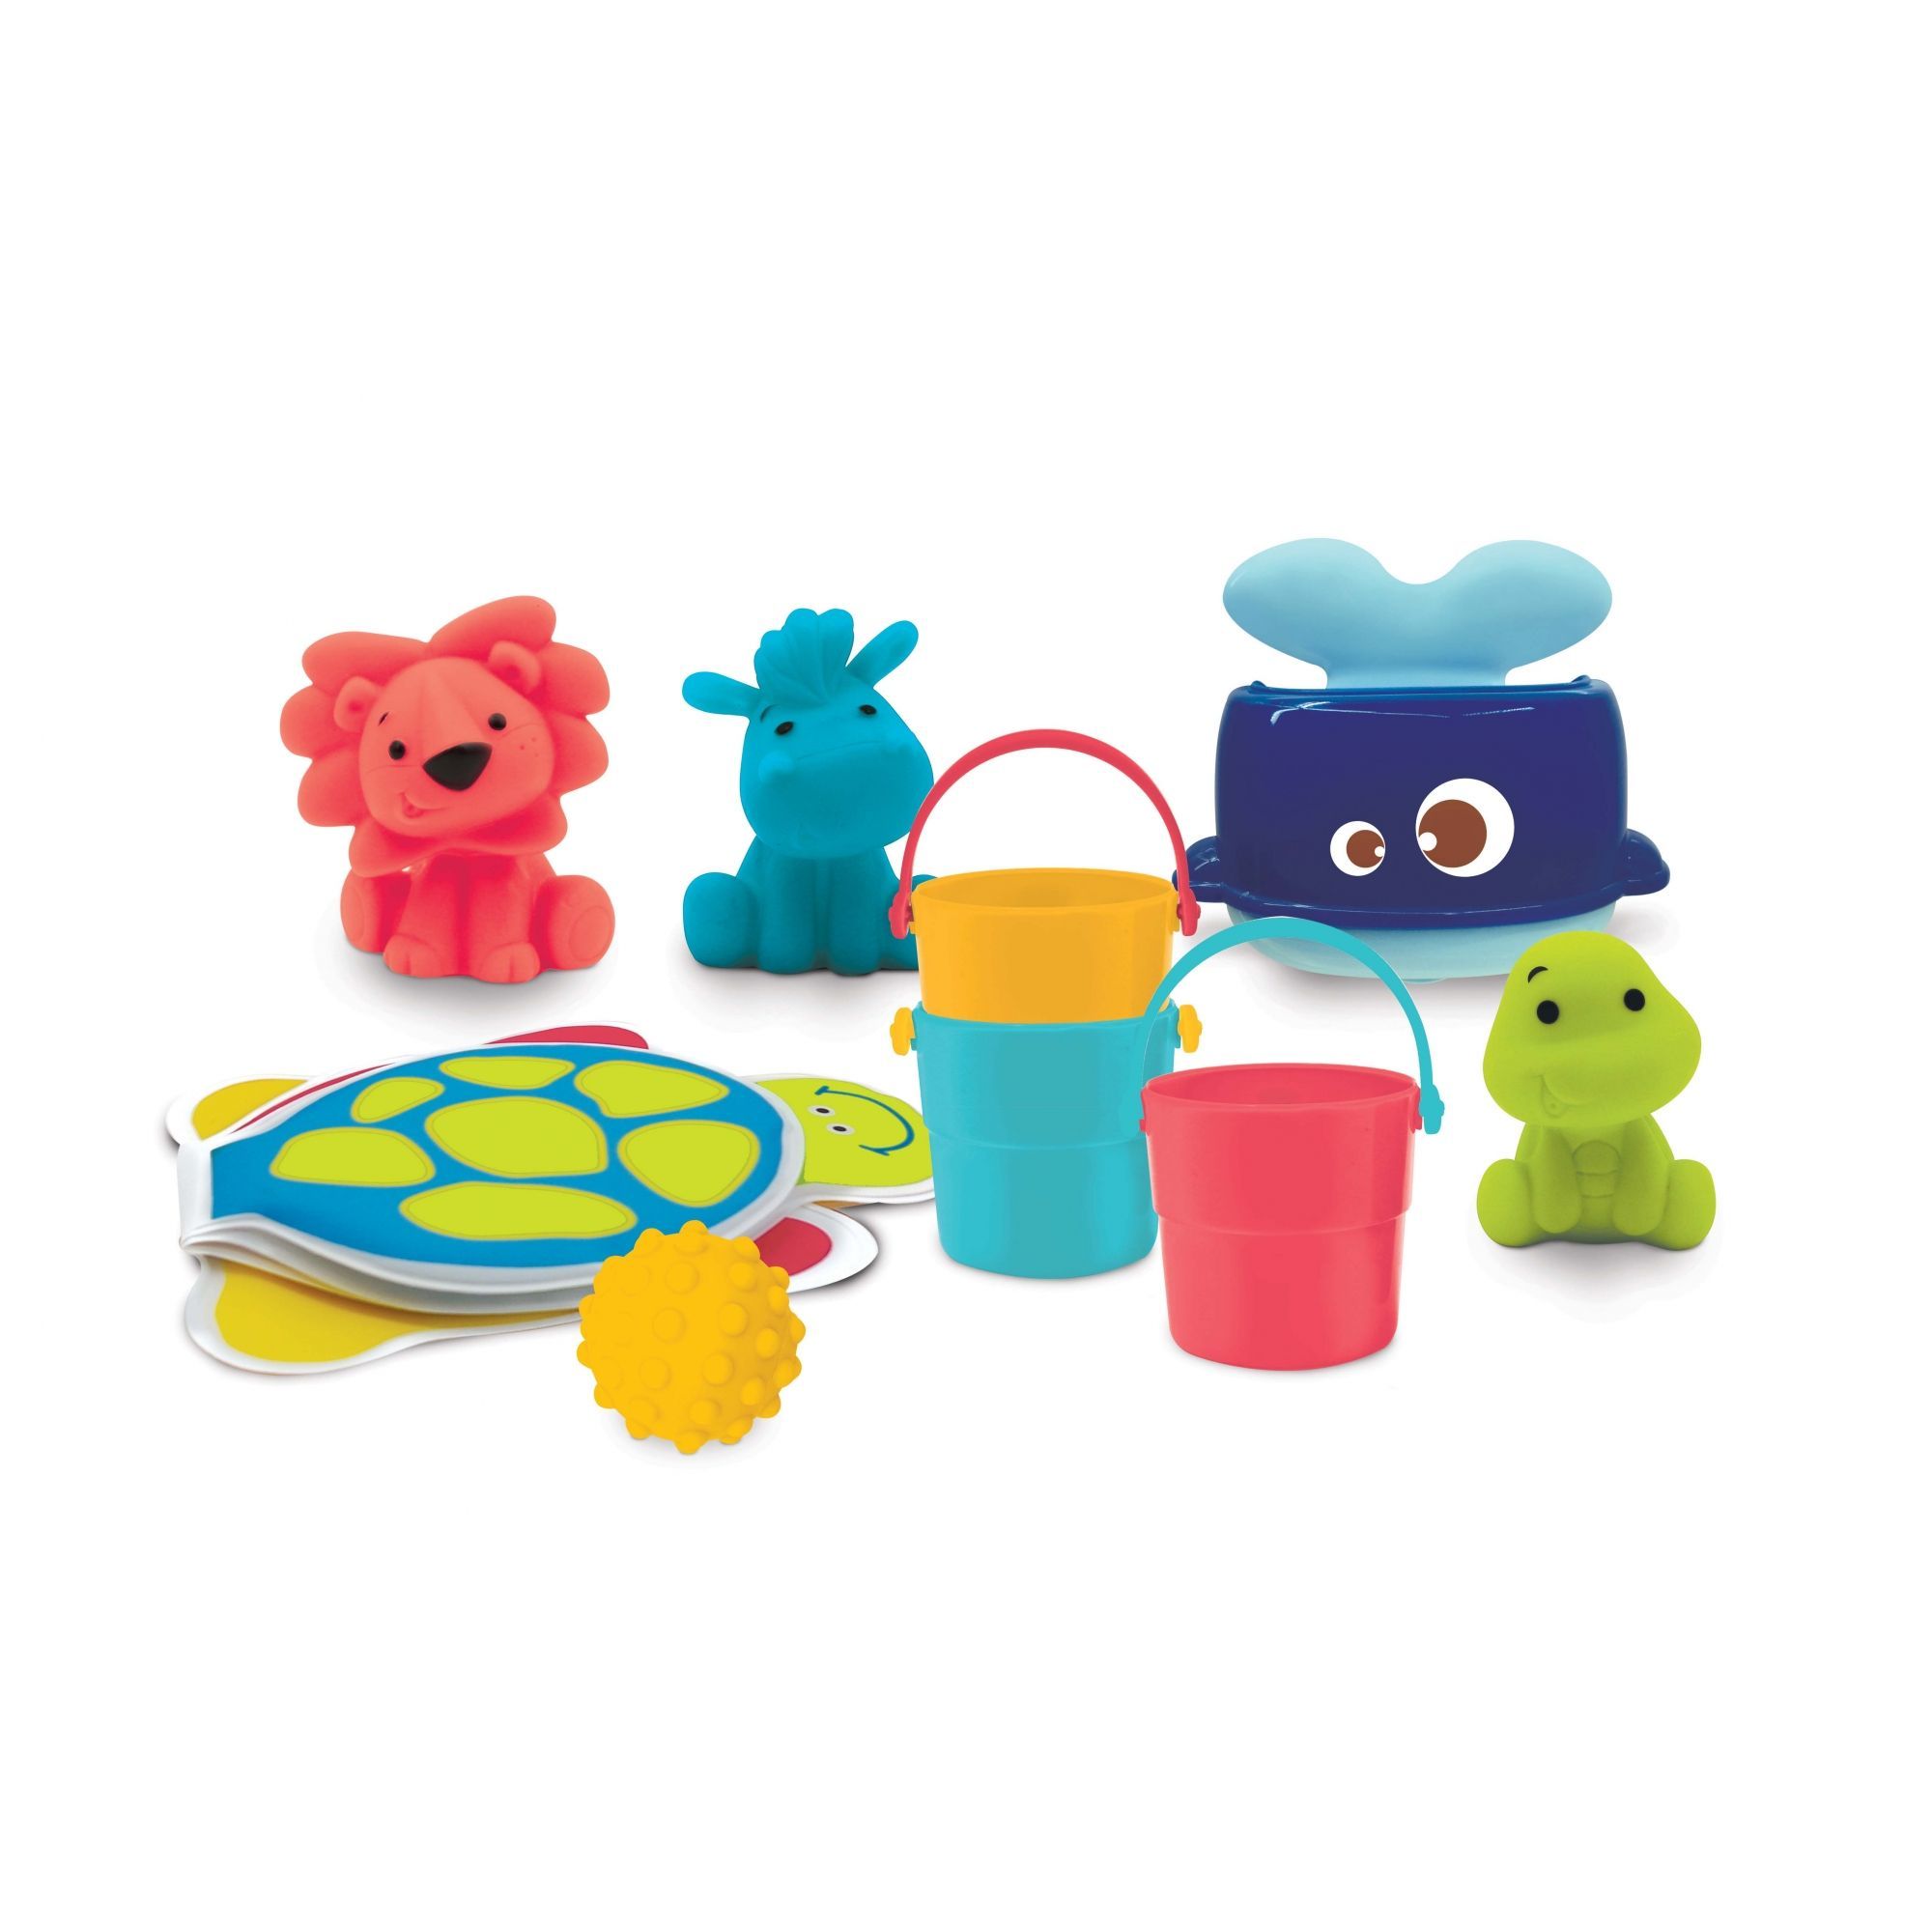 Valisette de bain LUDI - Kit complet de jouets d'eau pour enfant